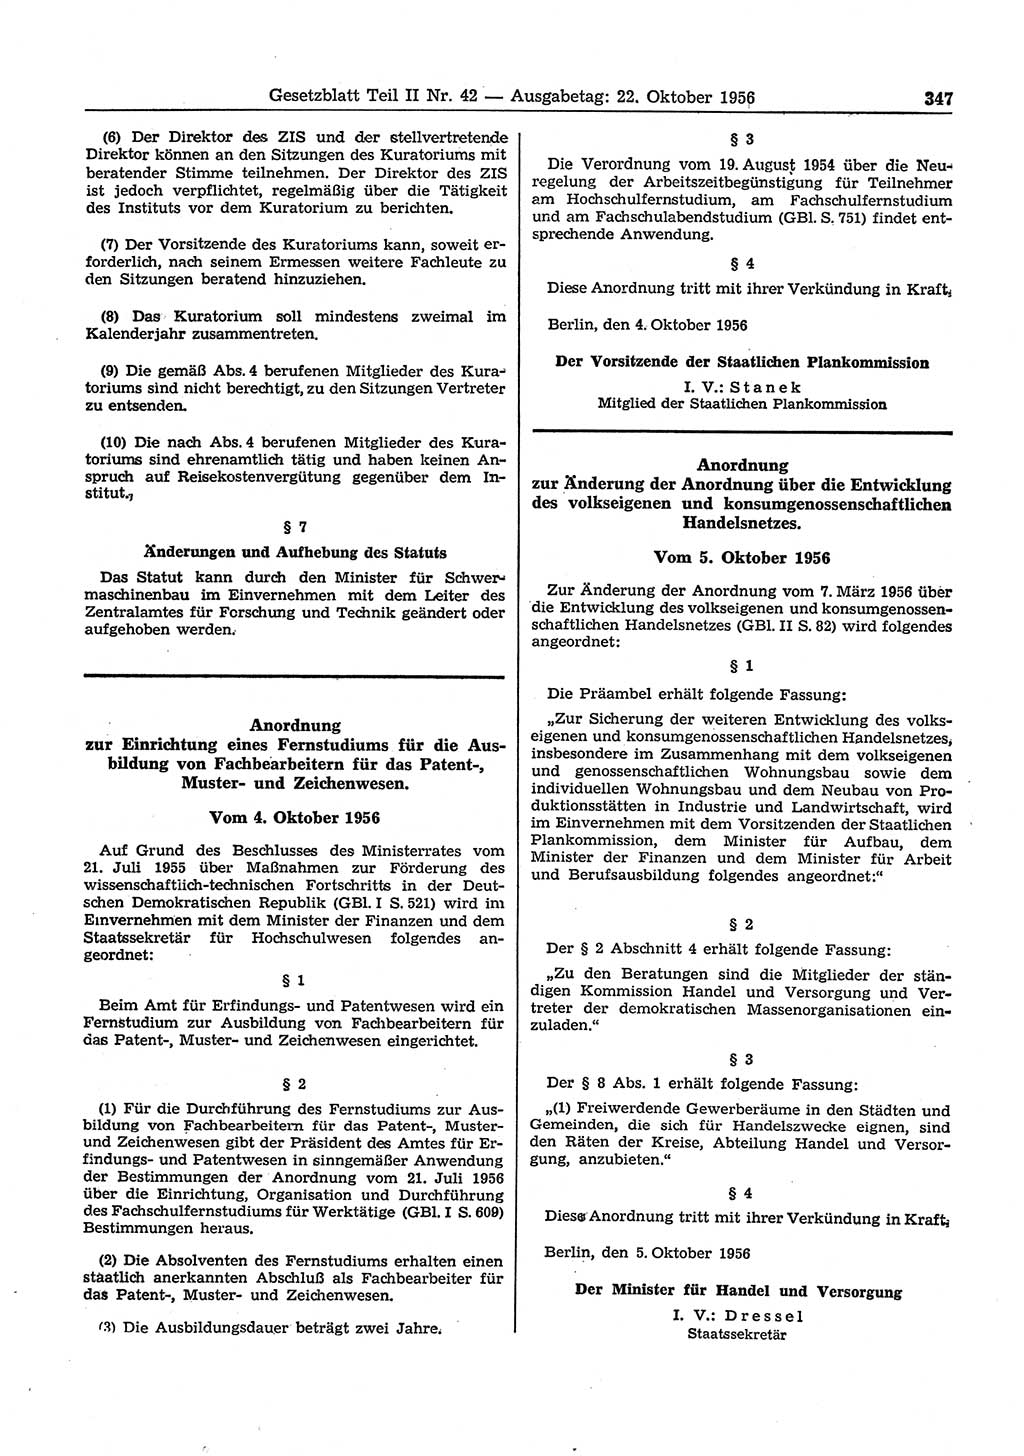 Gesetzblatt (GBl.) der Deutschen Demokratischen Republik (DDR) Teil ⅠⅠ 1956, Seite 347 (GBl. DDR ⅠⅠ 1956, S. 347)